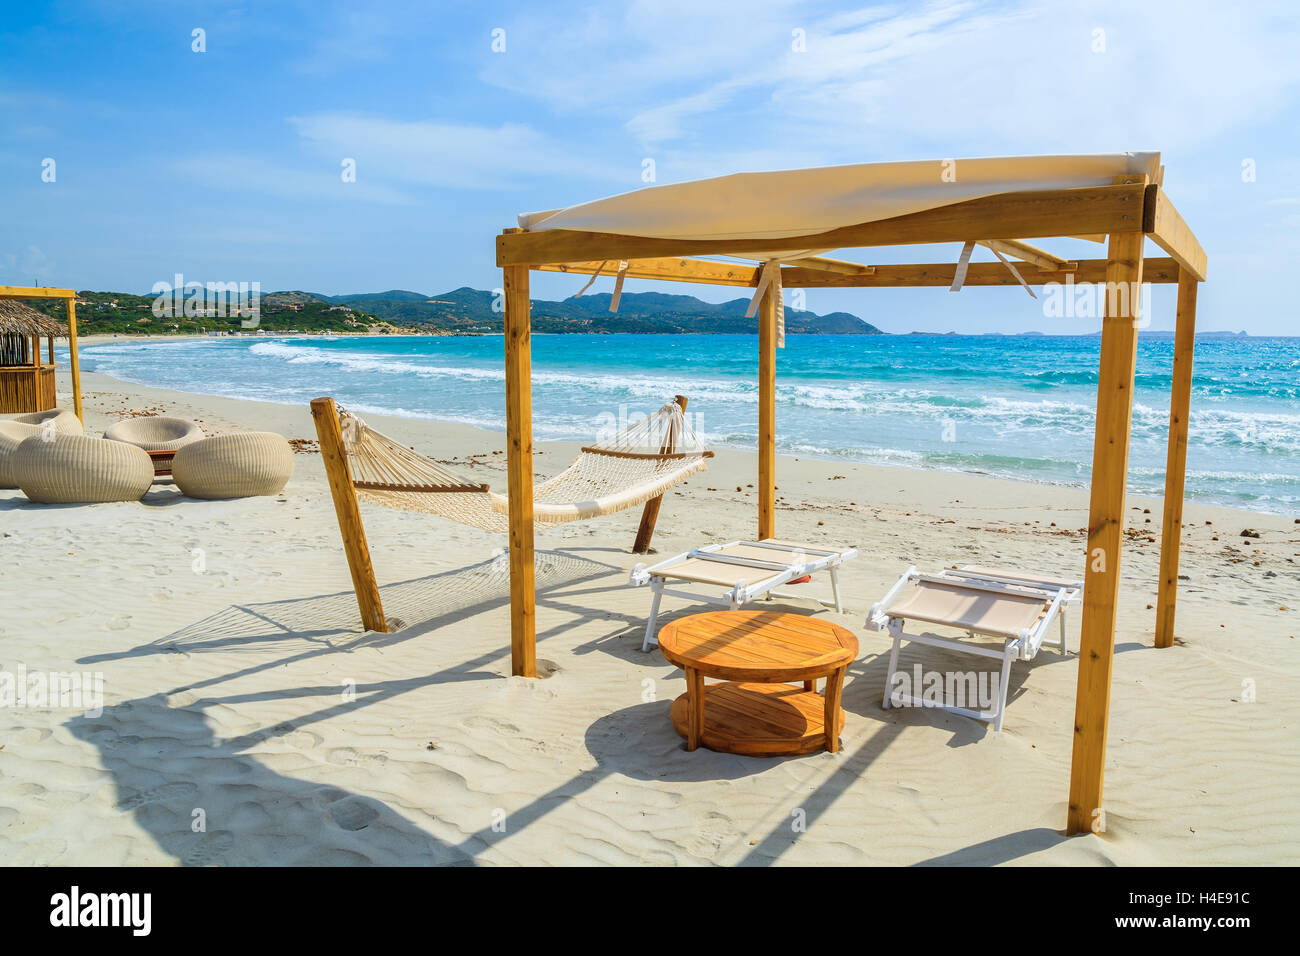 Sdraio in legno con tavolo in teak sulla spiaggia di sabbia bianca di Porto Giunco Bay, l'isola di Sardegna, Italia Foto Stock